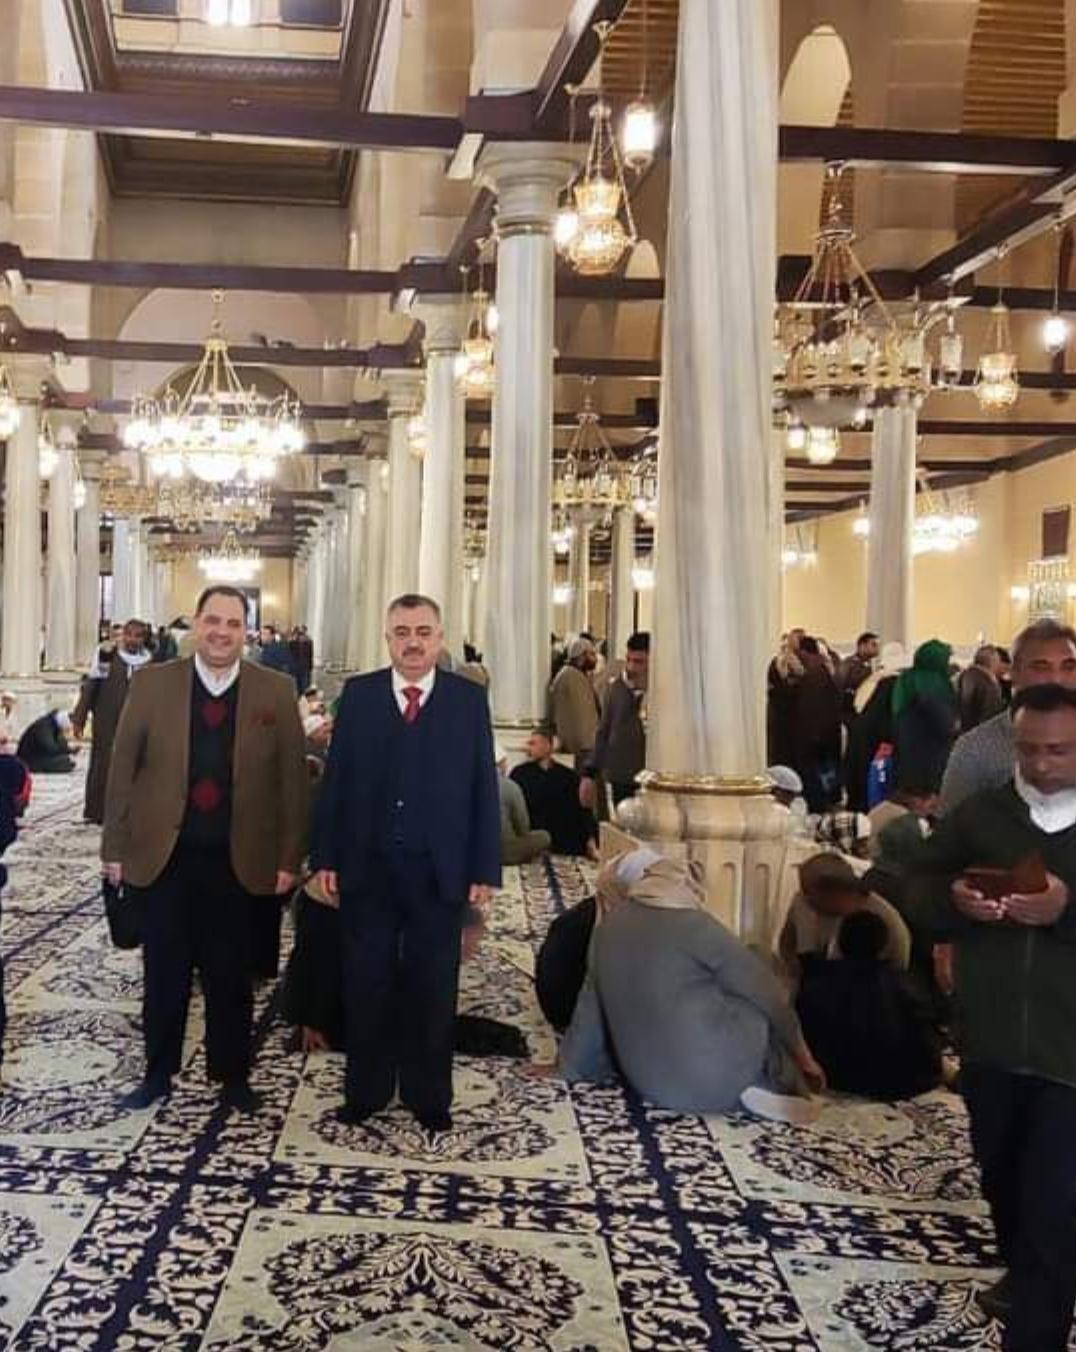 البرزنجي يزور مرقد الرأس الشريف لجده الإمام الحسين عليه السلام في القاهرة